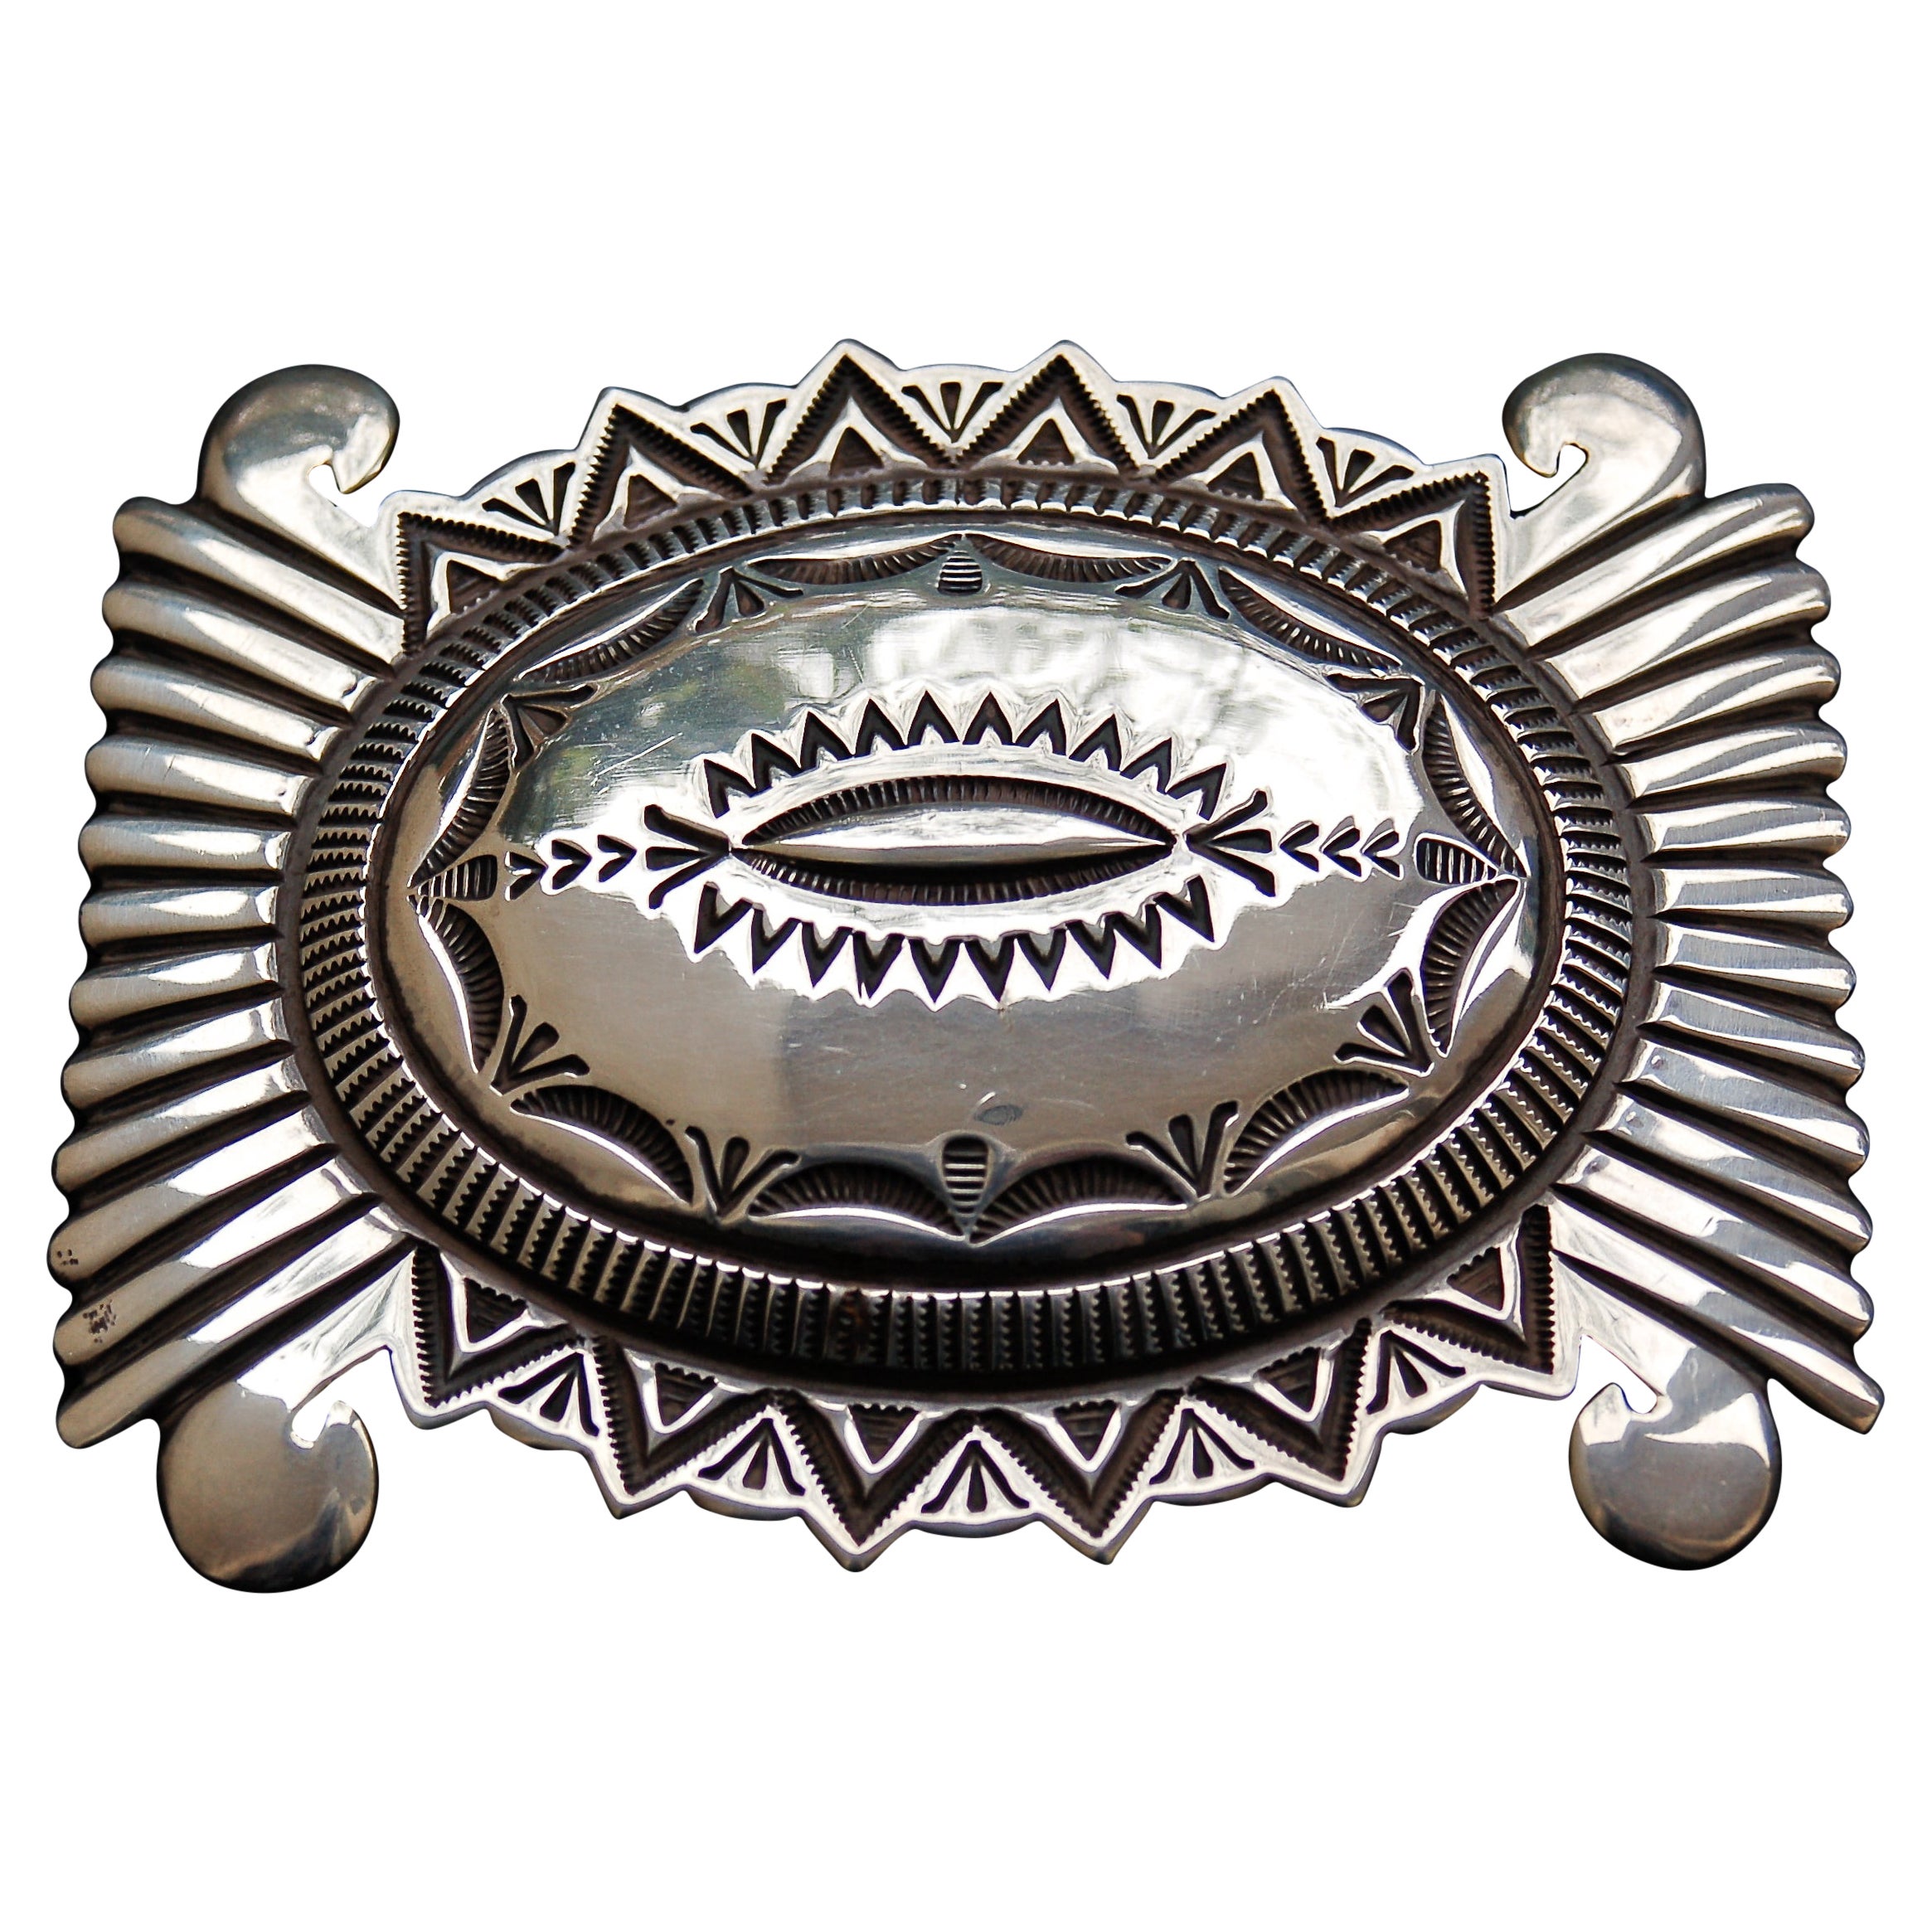 Striking Navajo Stamped Heavy Sterling Silver Belt Buckle by Wilson Jim, 1988